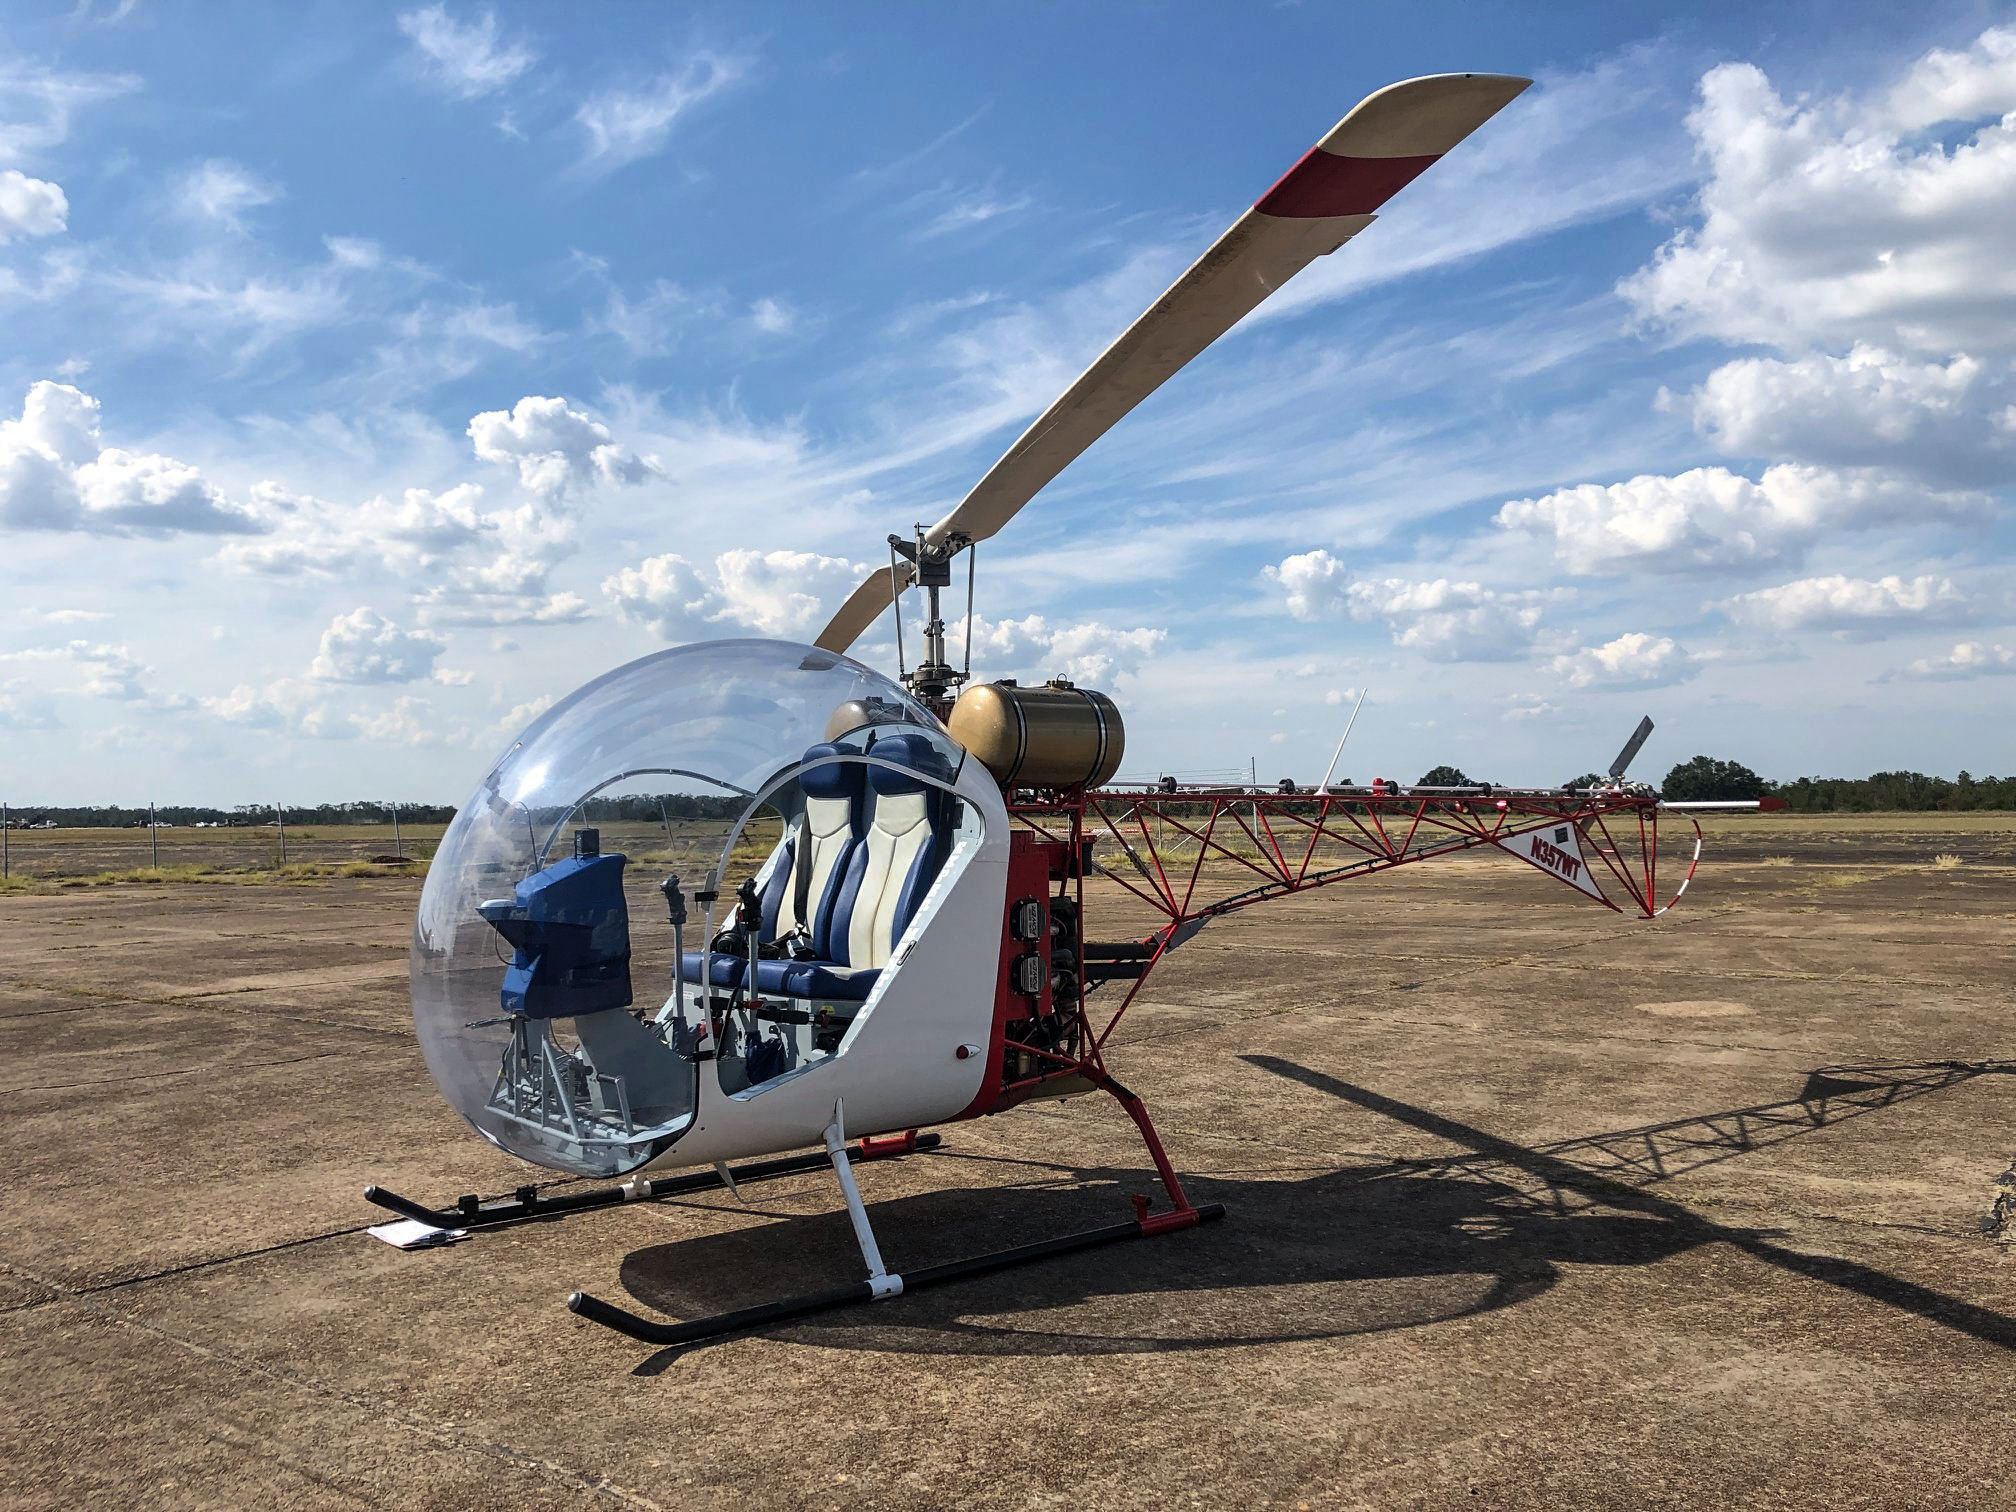 safari 400 helicopter kit price